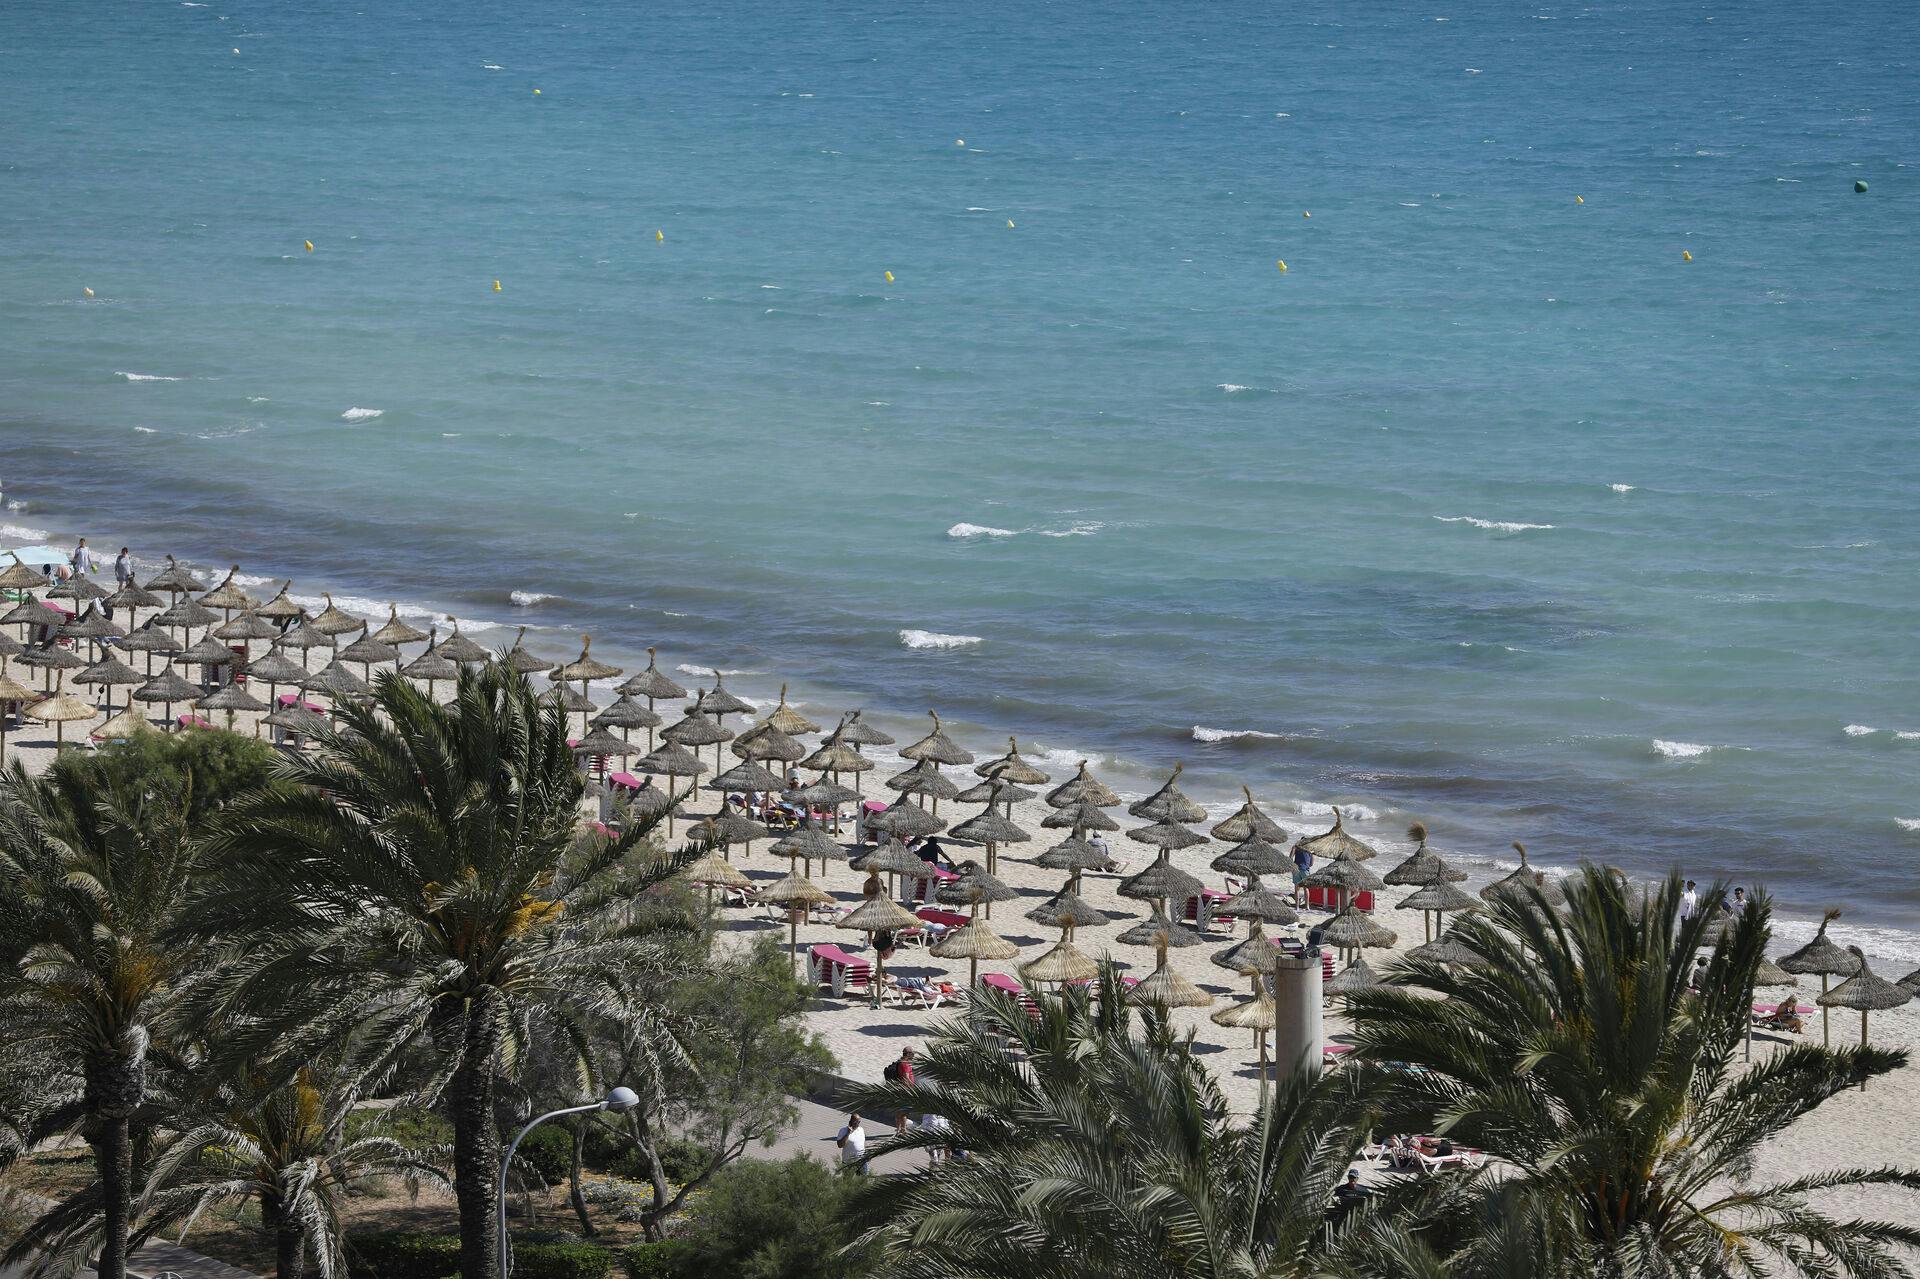 Området Playa de Palma på Mallorca blev natten til tirsdag ramt af en tragedie, da en 24-årig tysk turist mistede livet.